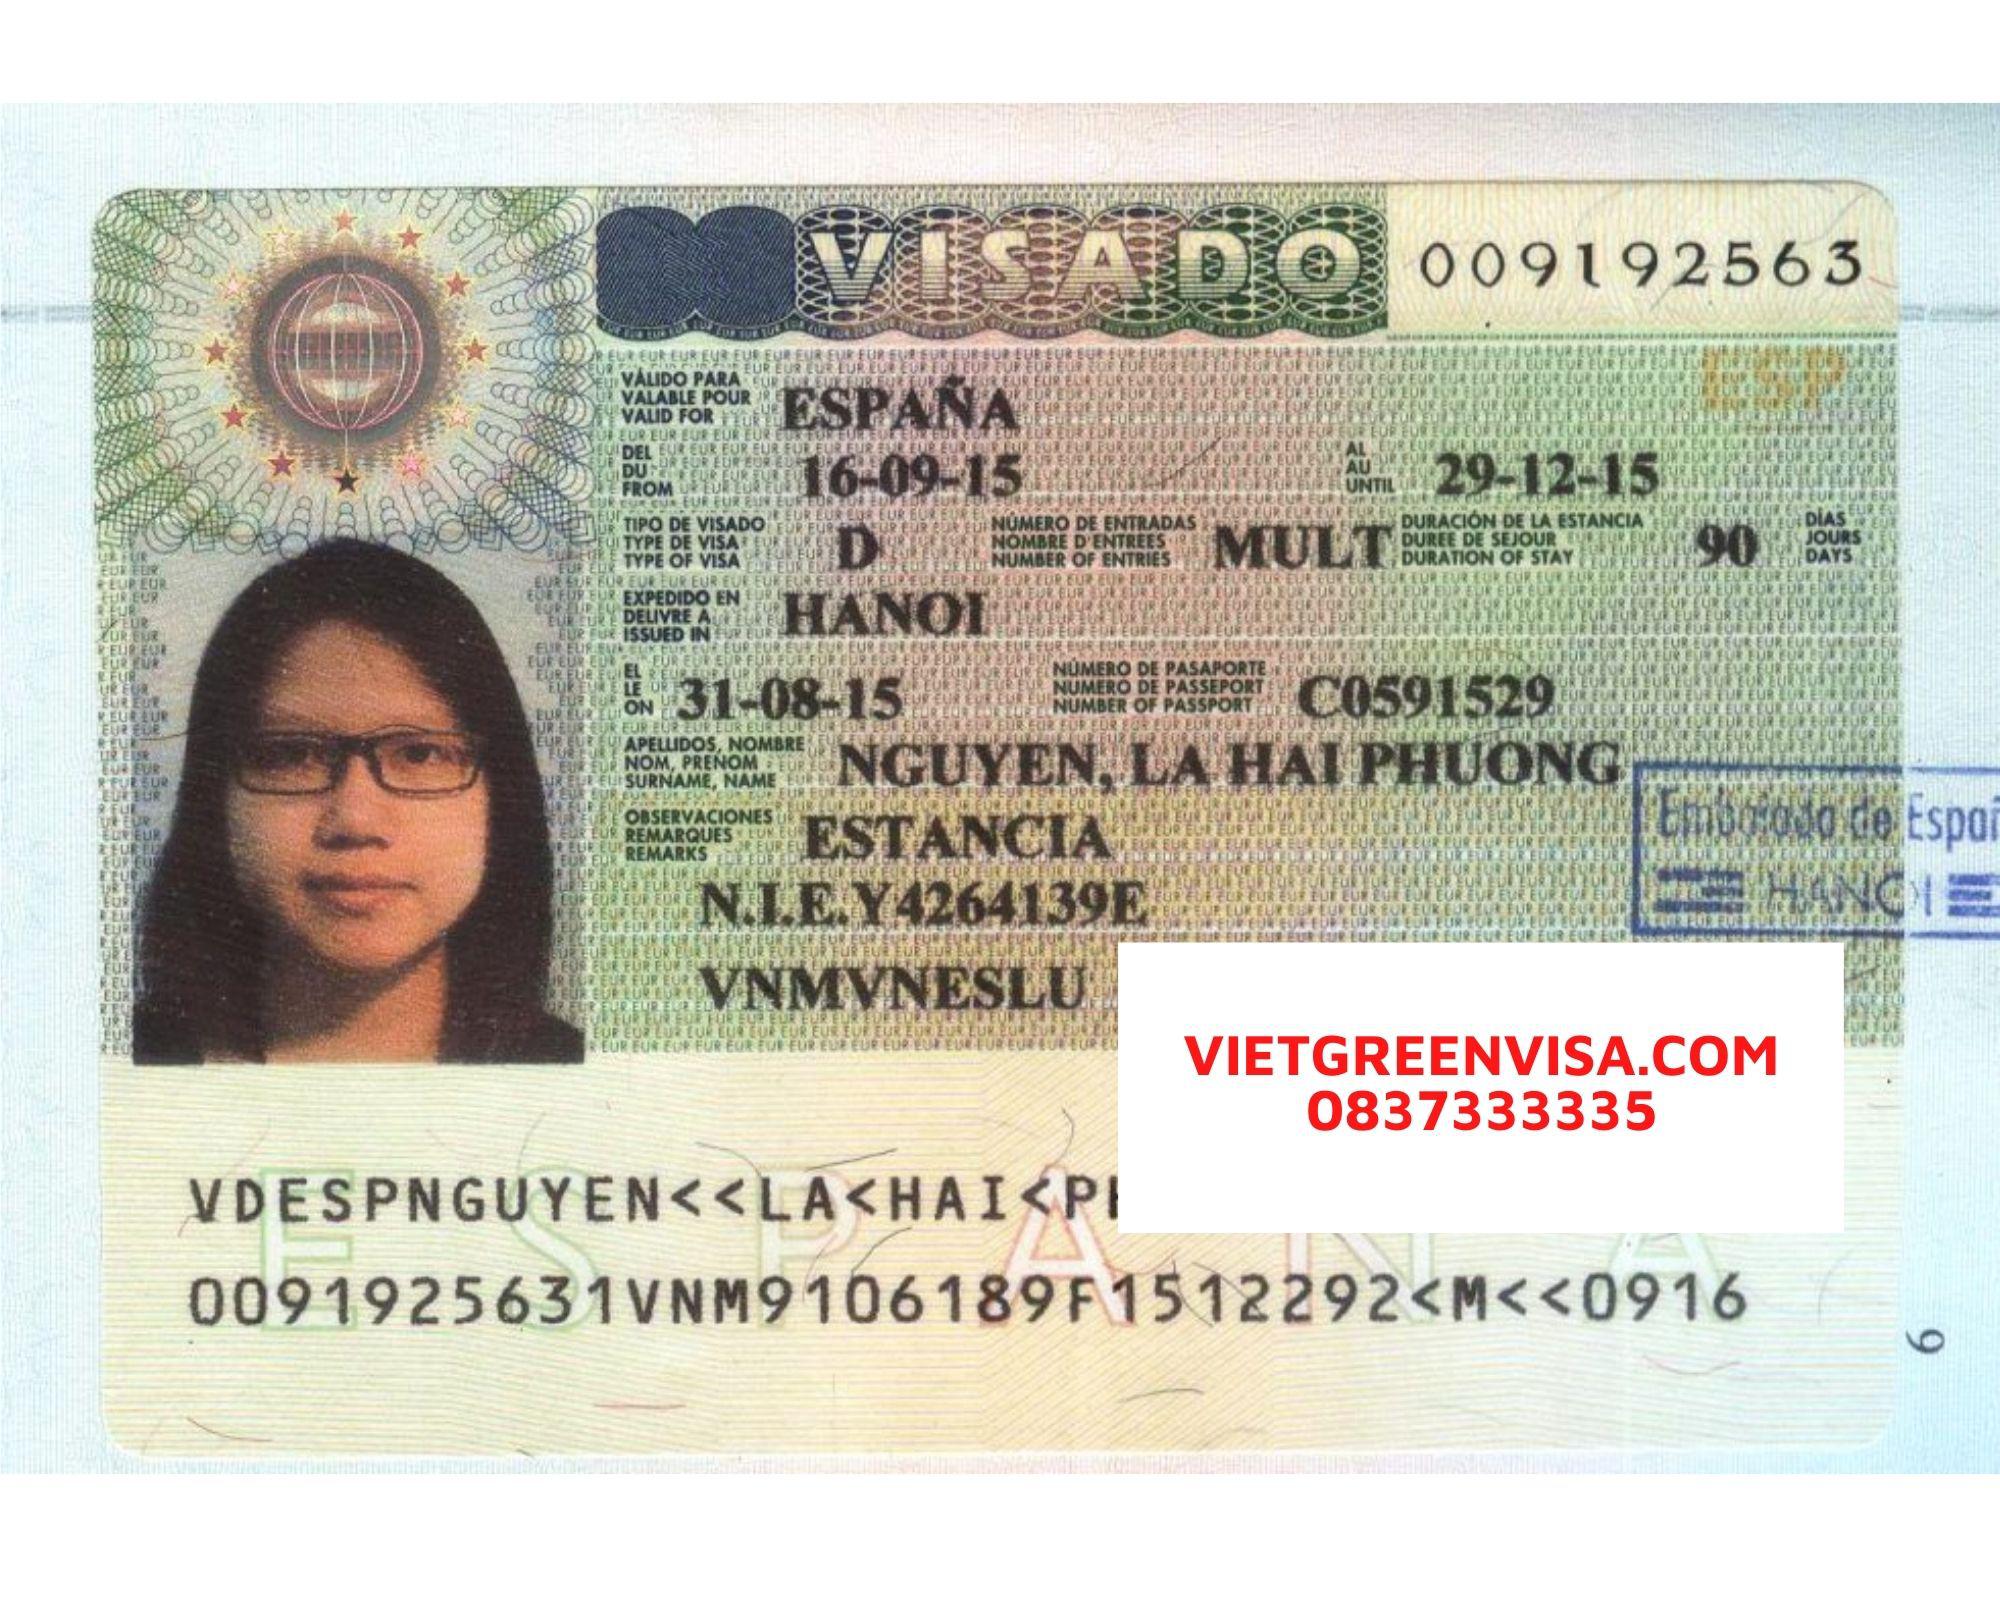 Tư vấn dịch thuật công chứng hồ sơ visa đi Tây Ban Nha